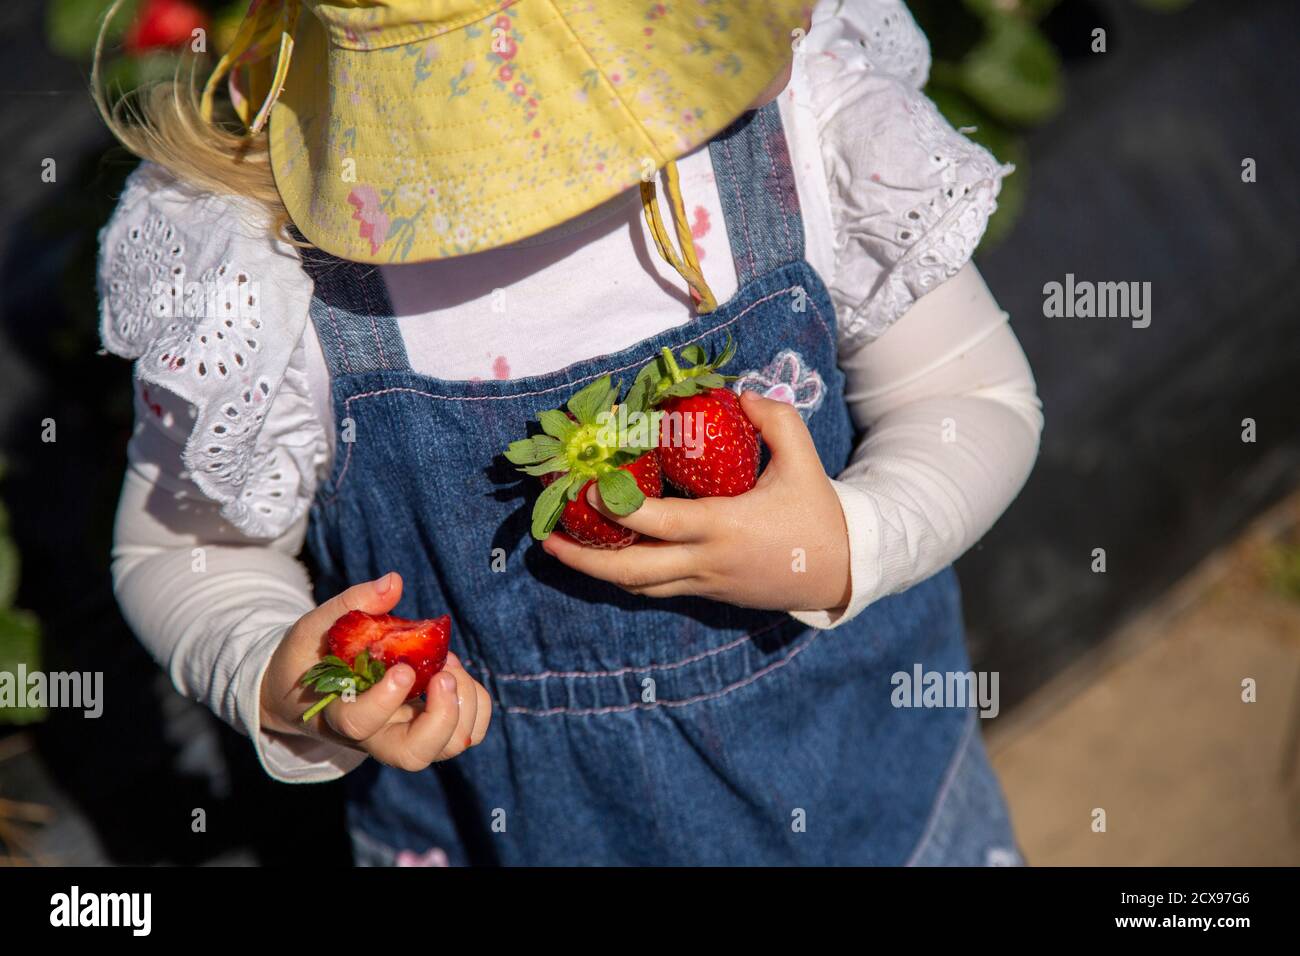 Una niña de dos años recogiendo fresas. Foto de stock